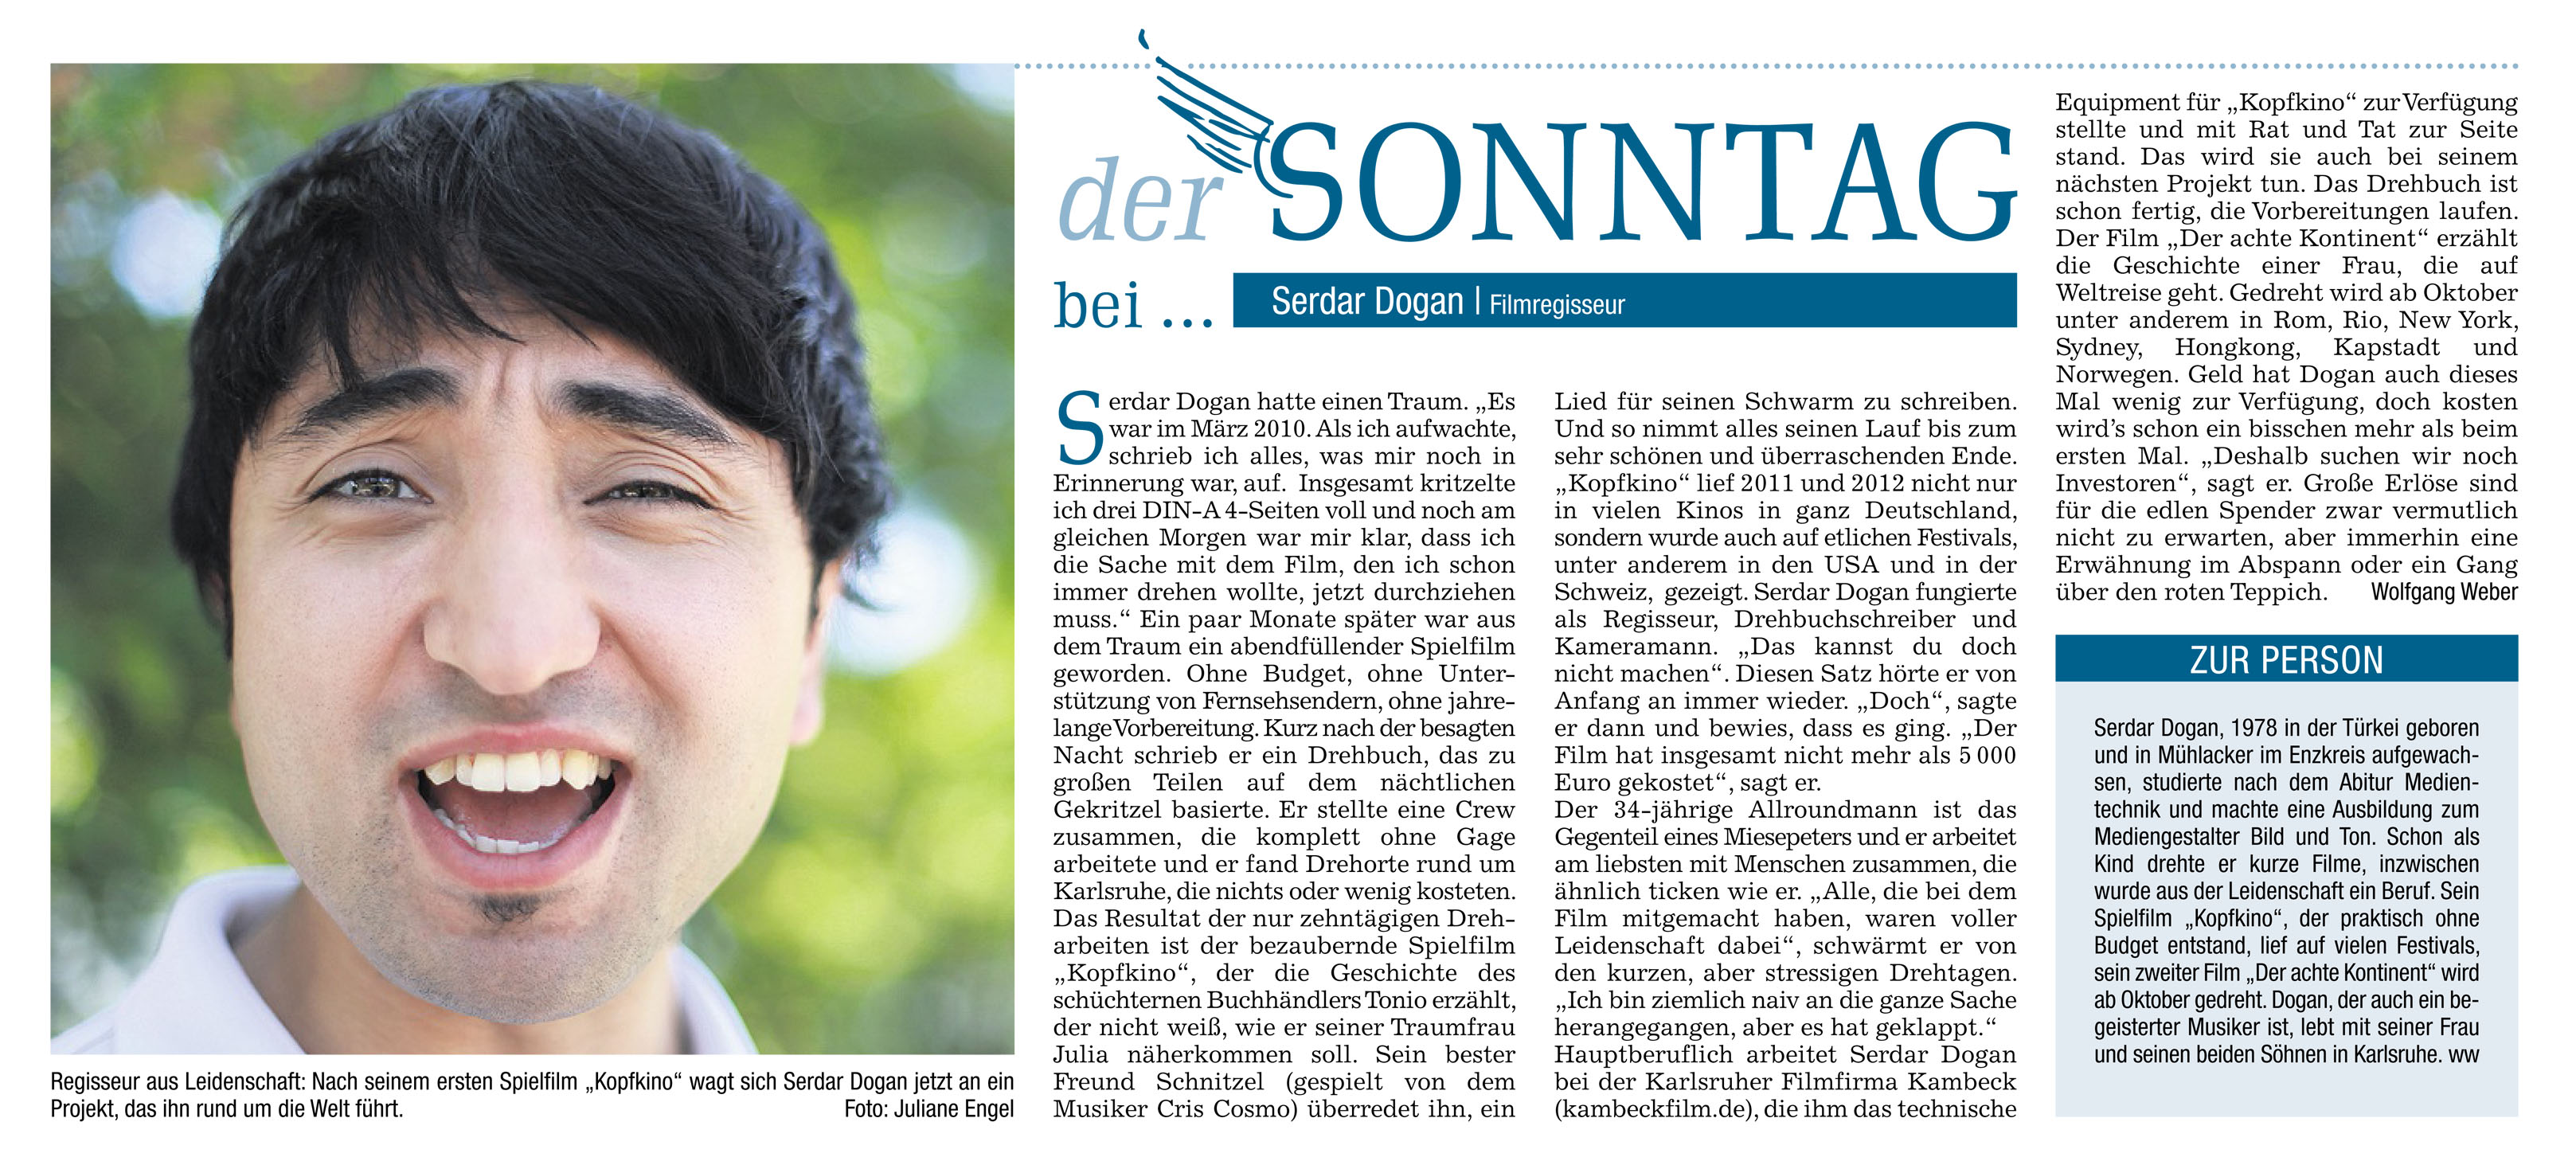 BNN (2.6.2013) “Der Sonntag bei <b>Serdar Dogan</b>” - BNN_D8K_Juni2013